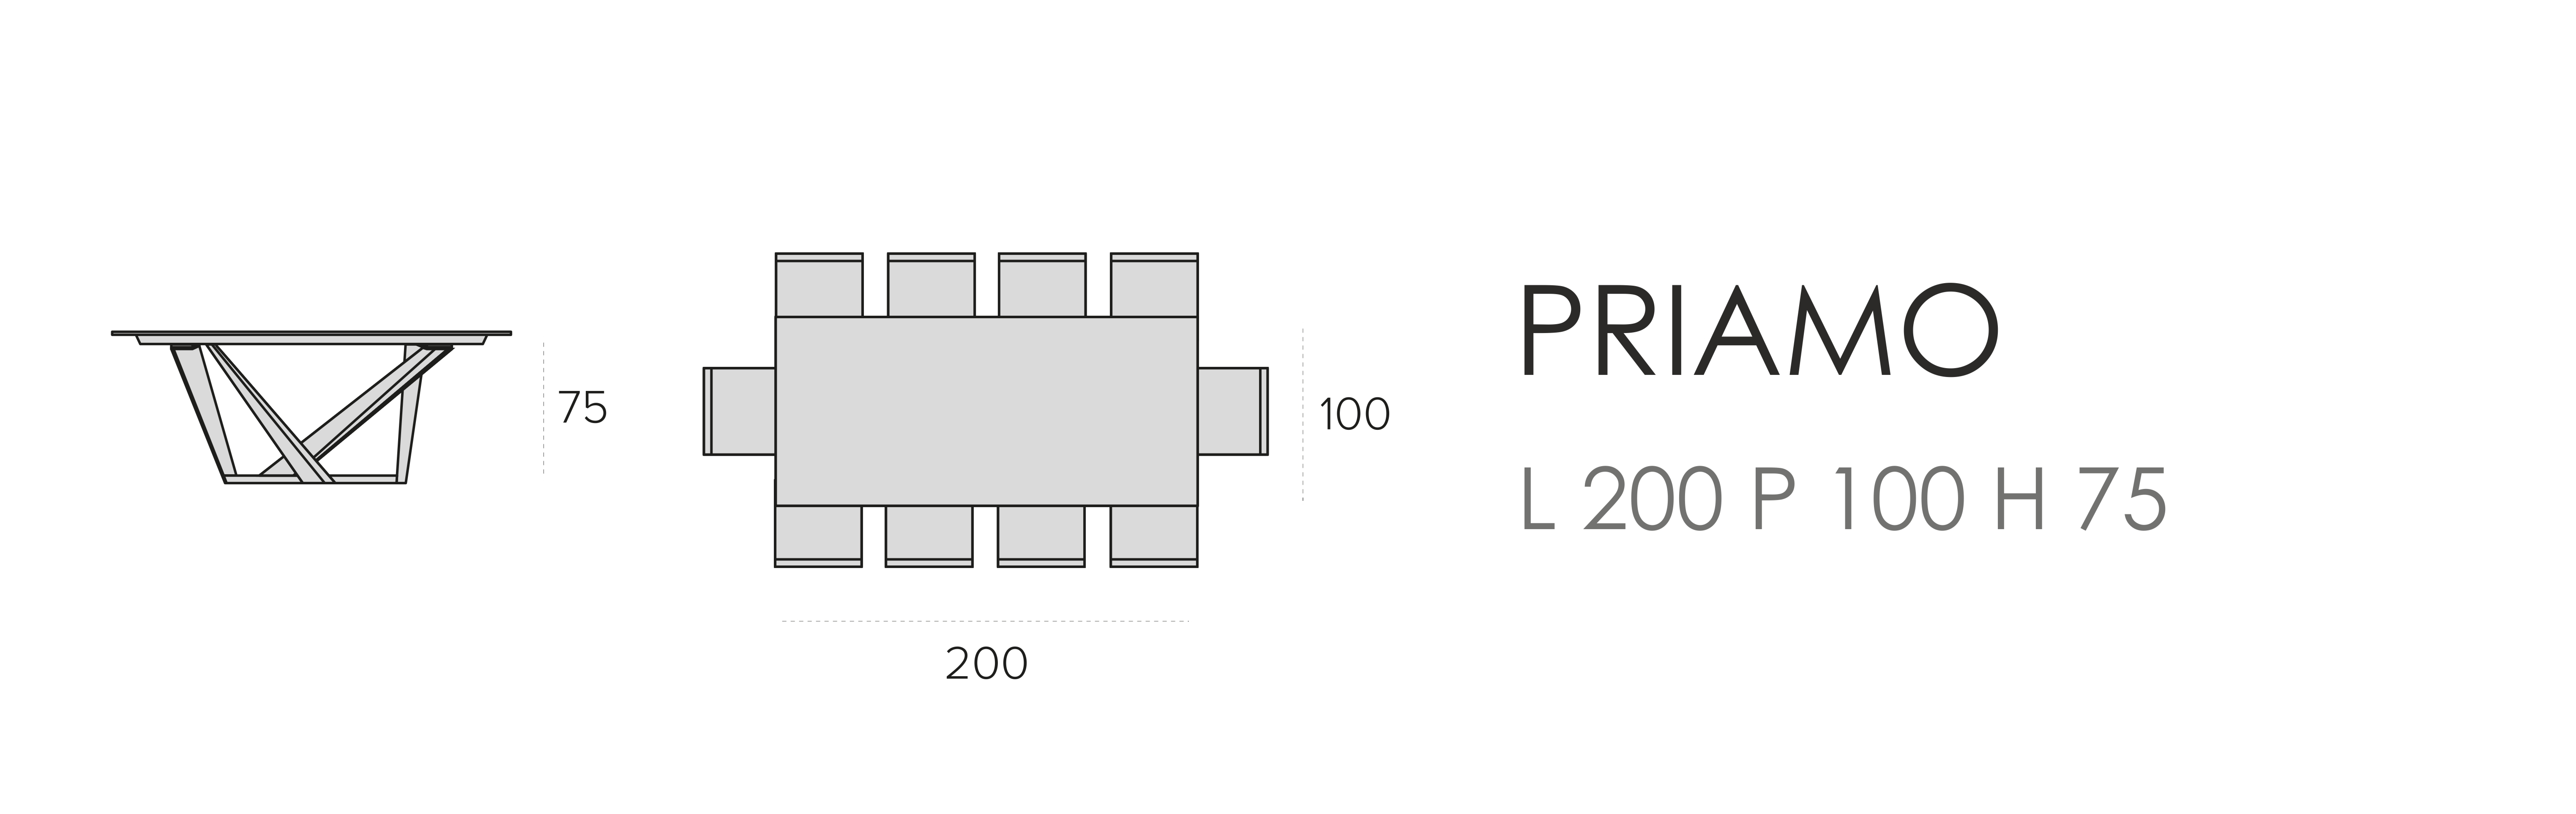 Priamo L 200 P 100 H 75 (прямоугольный)